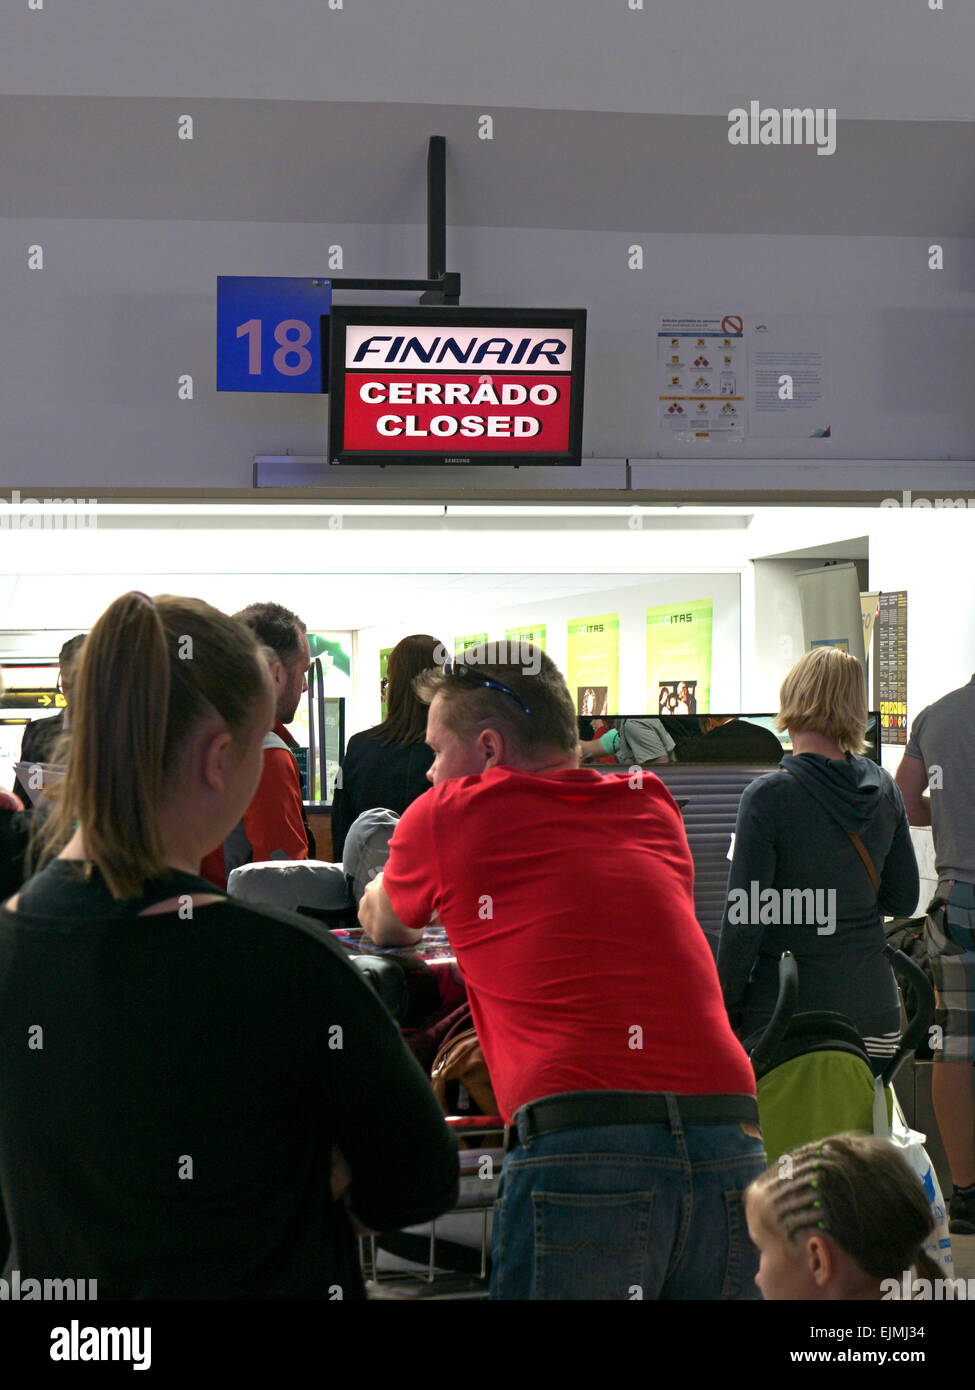 Warteschlange der frustrierte Fluggäste und Gepäck warten am Flughafen Halle beim geschlossenen Check-in Stockfoto